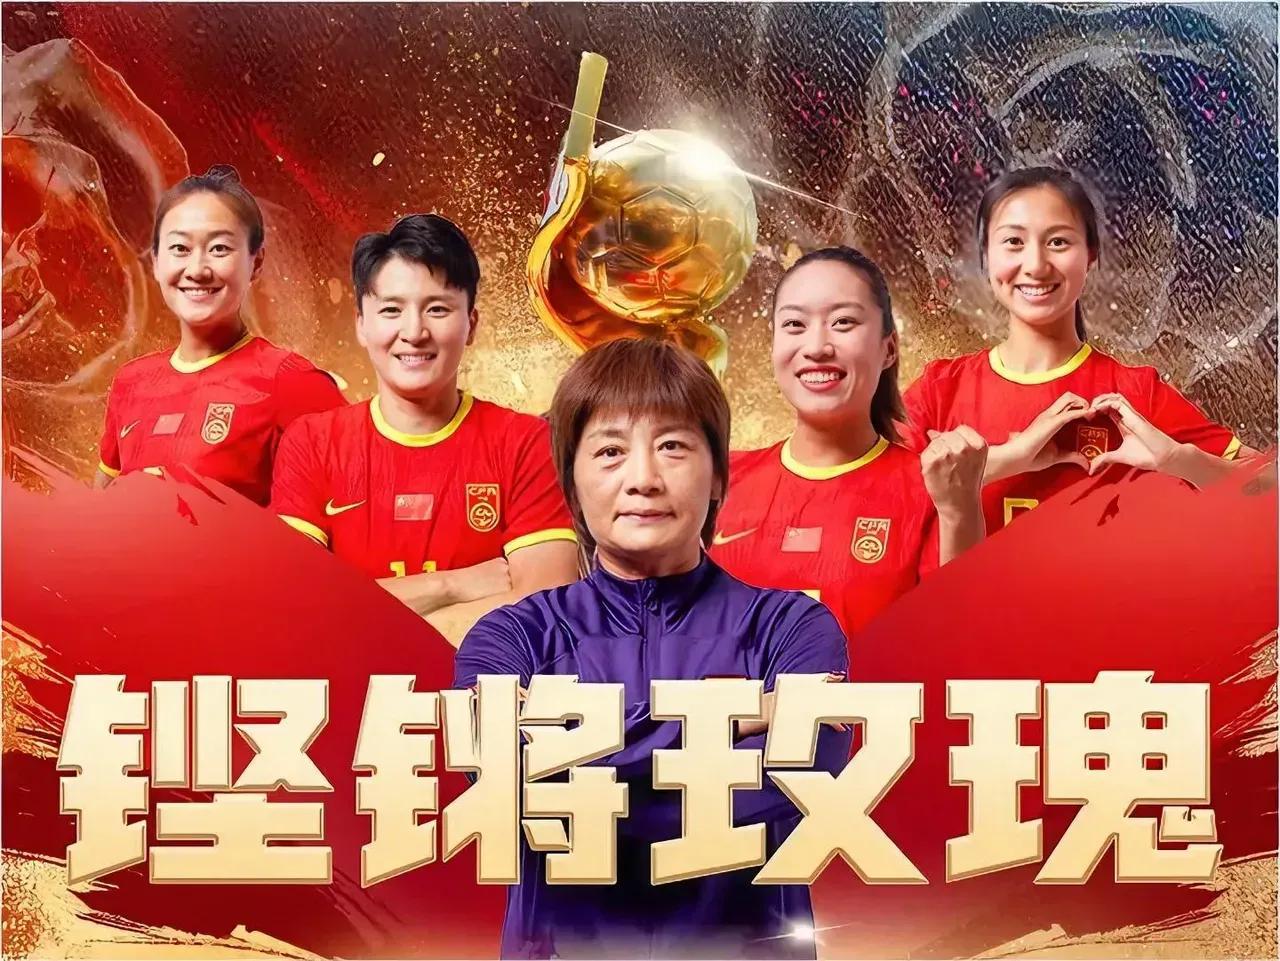 中国女足在女足世界杯历届的战绩如下：

第一届（1991年）：获得第5名

第二